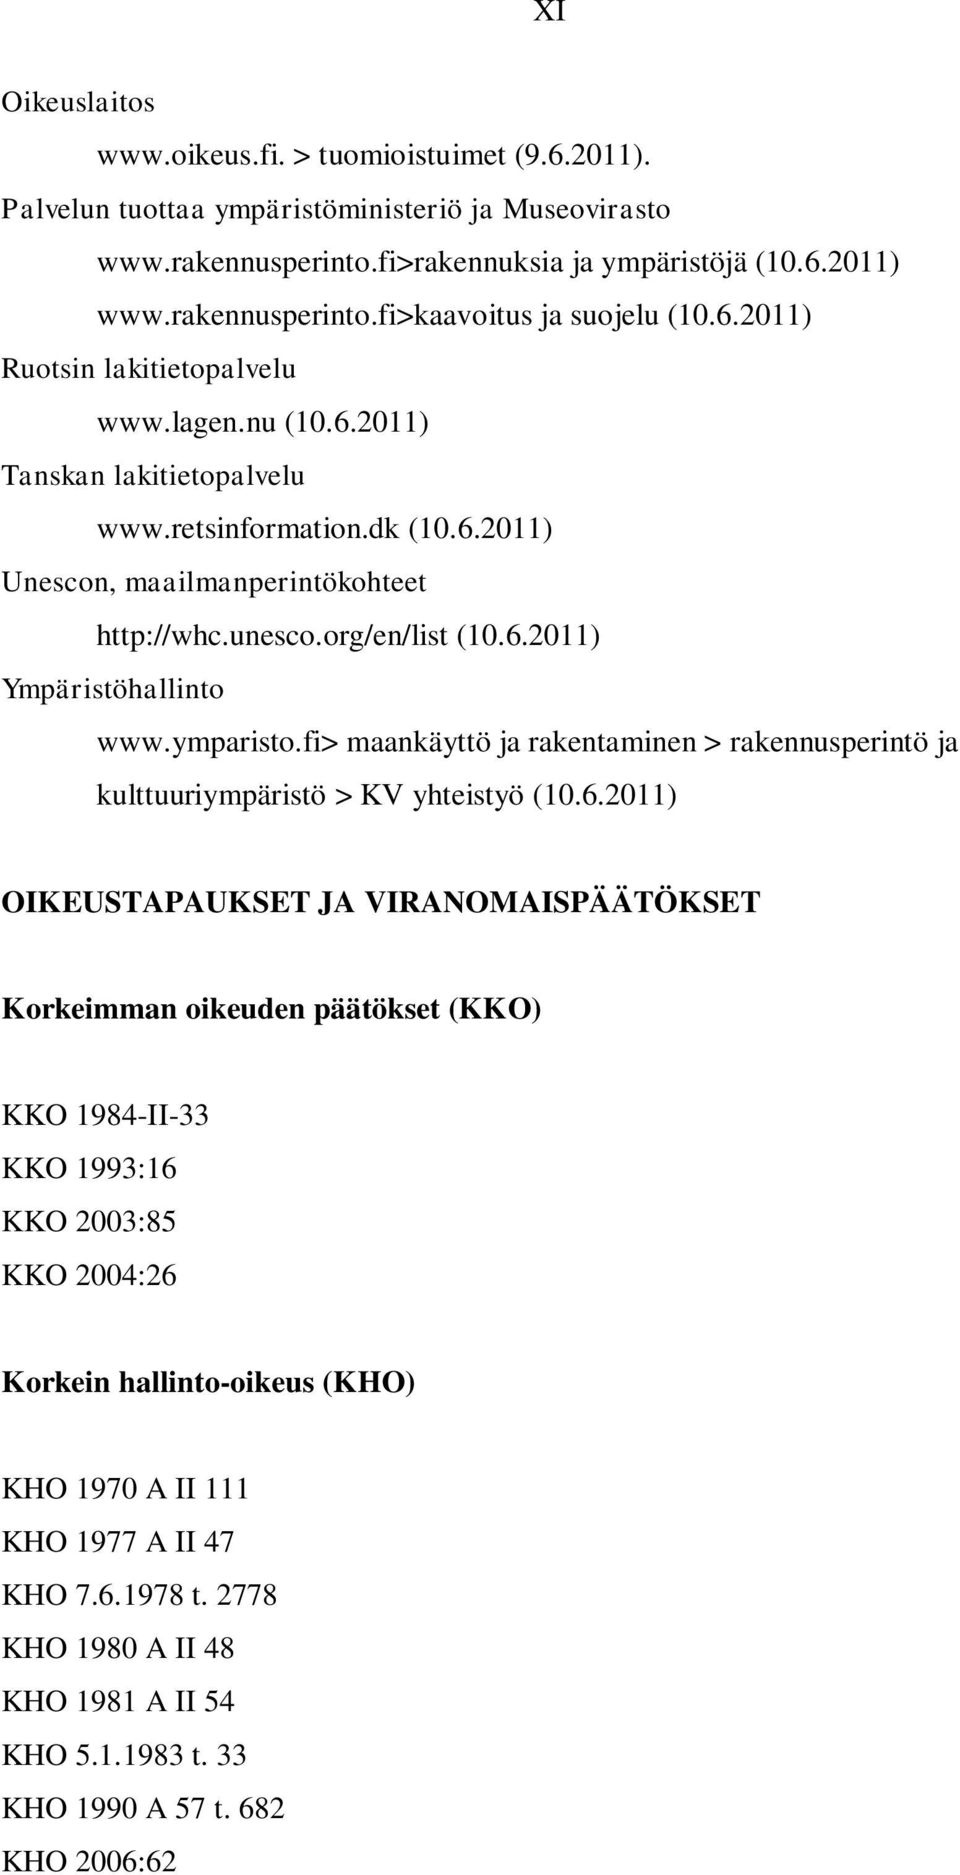 ymparisto.fi> maankäyttö ja rakentaminen > rakennusperintö ja kulttuuriympäristö > KV yhteistyö (10.6.